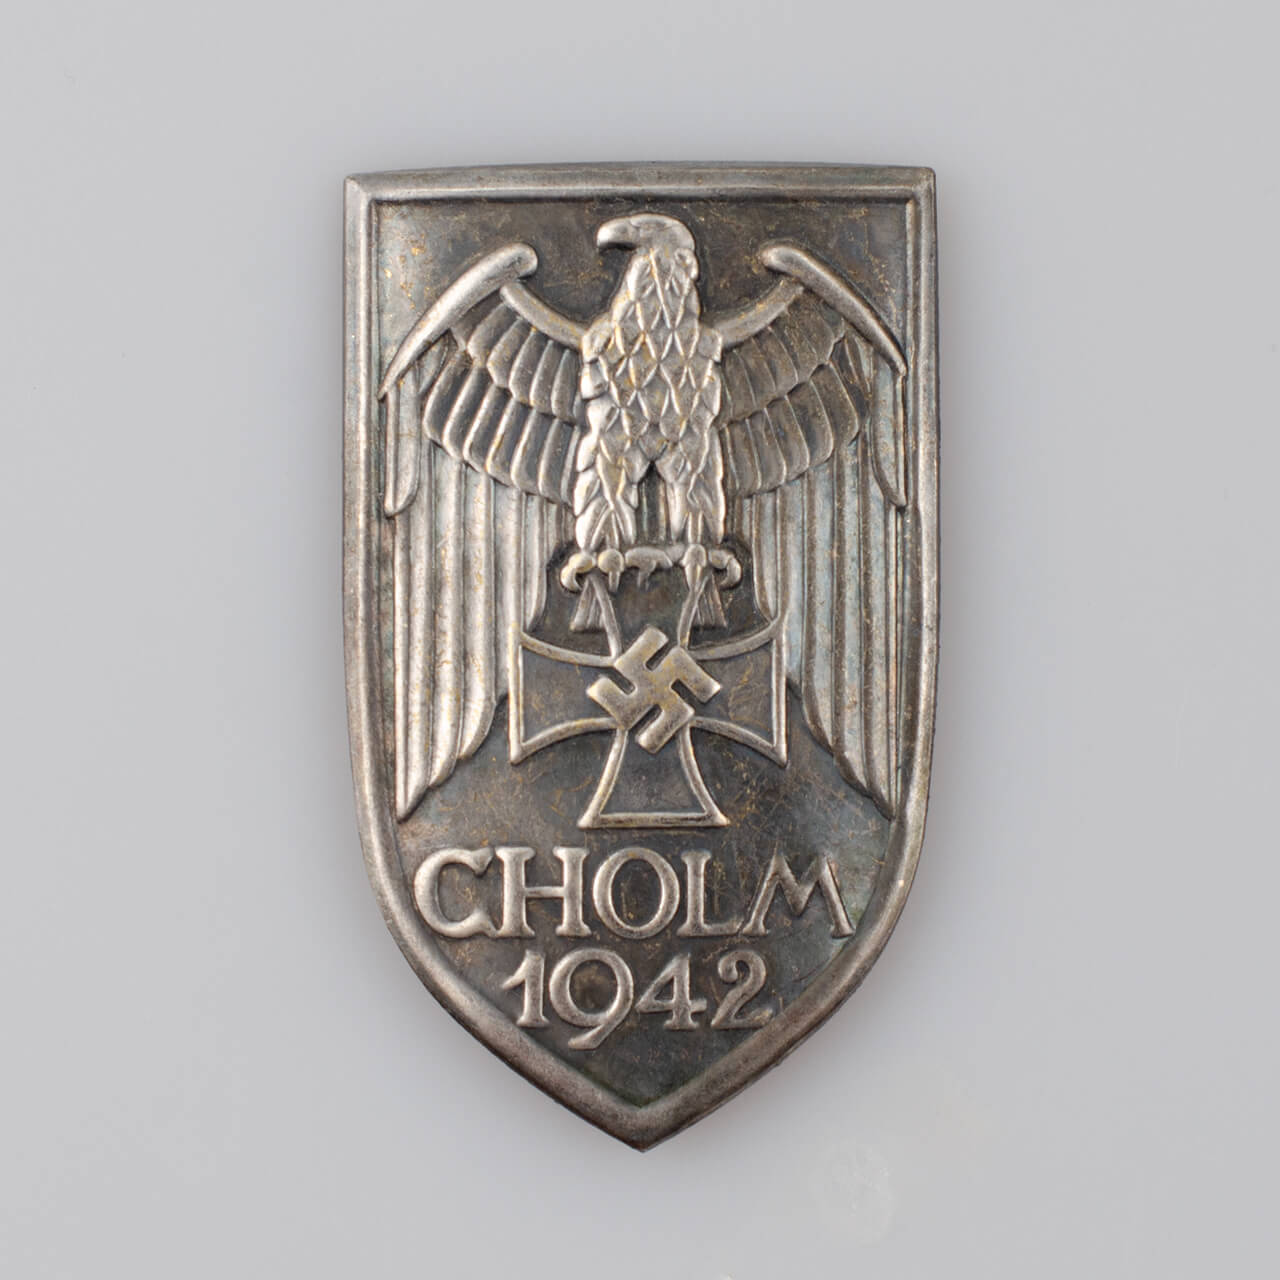 Tarcza naramienna Cholm 1942 (Cholmschild) - III Rzesza